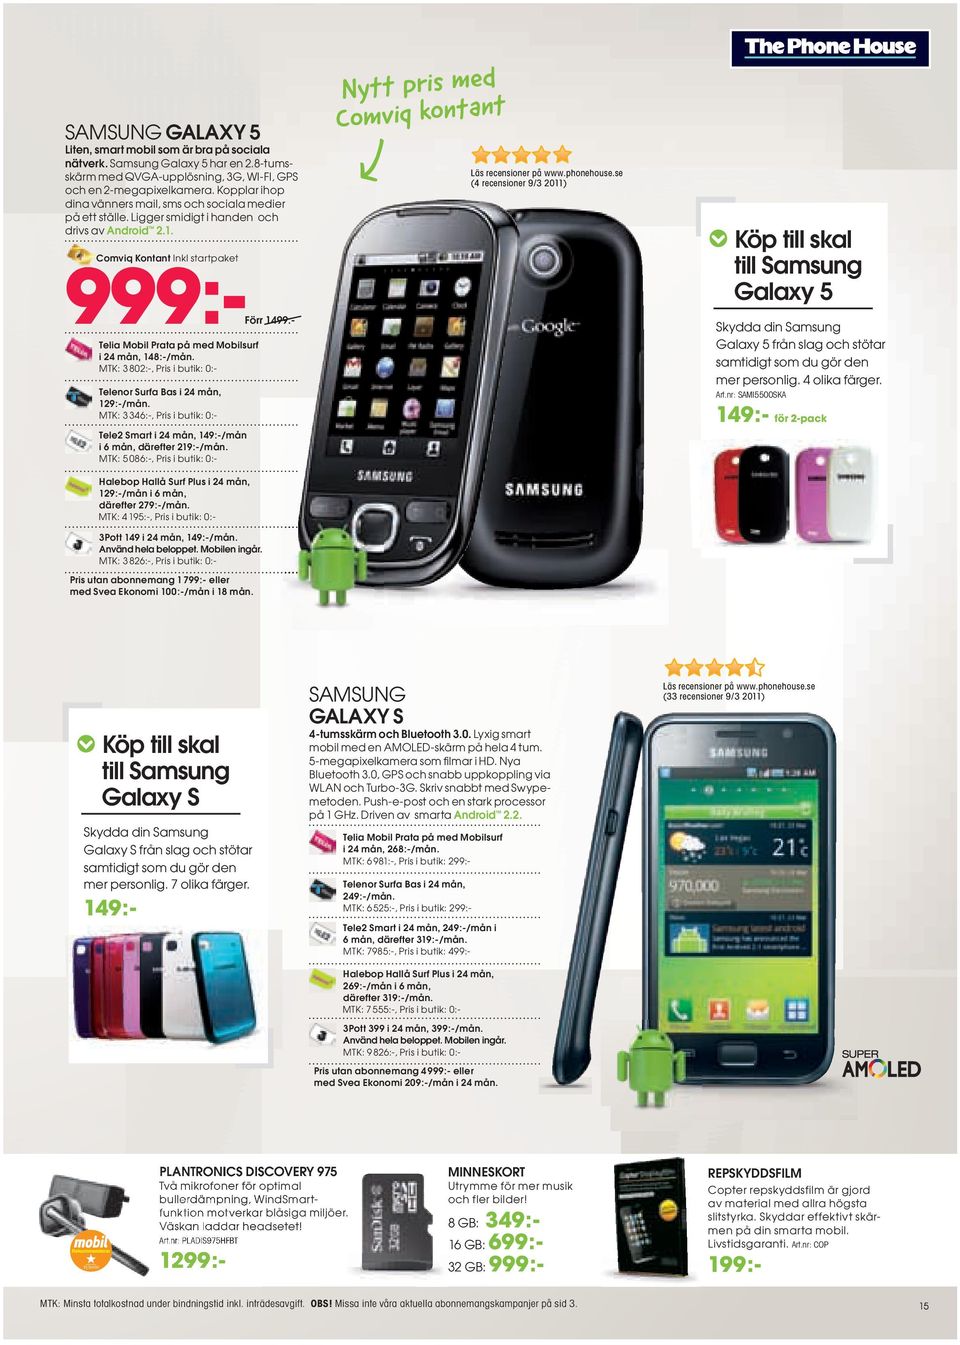 se (4 recensioner 9/3 2011) Köp till skal till Samsung Galaxy 5 999:999 Comviq Kontant Inkl startpaket Förr 1499:- Skydda din Samsung Galaxy 5 från slag och stötar samtidigt som du gör den mer